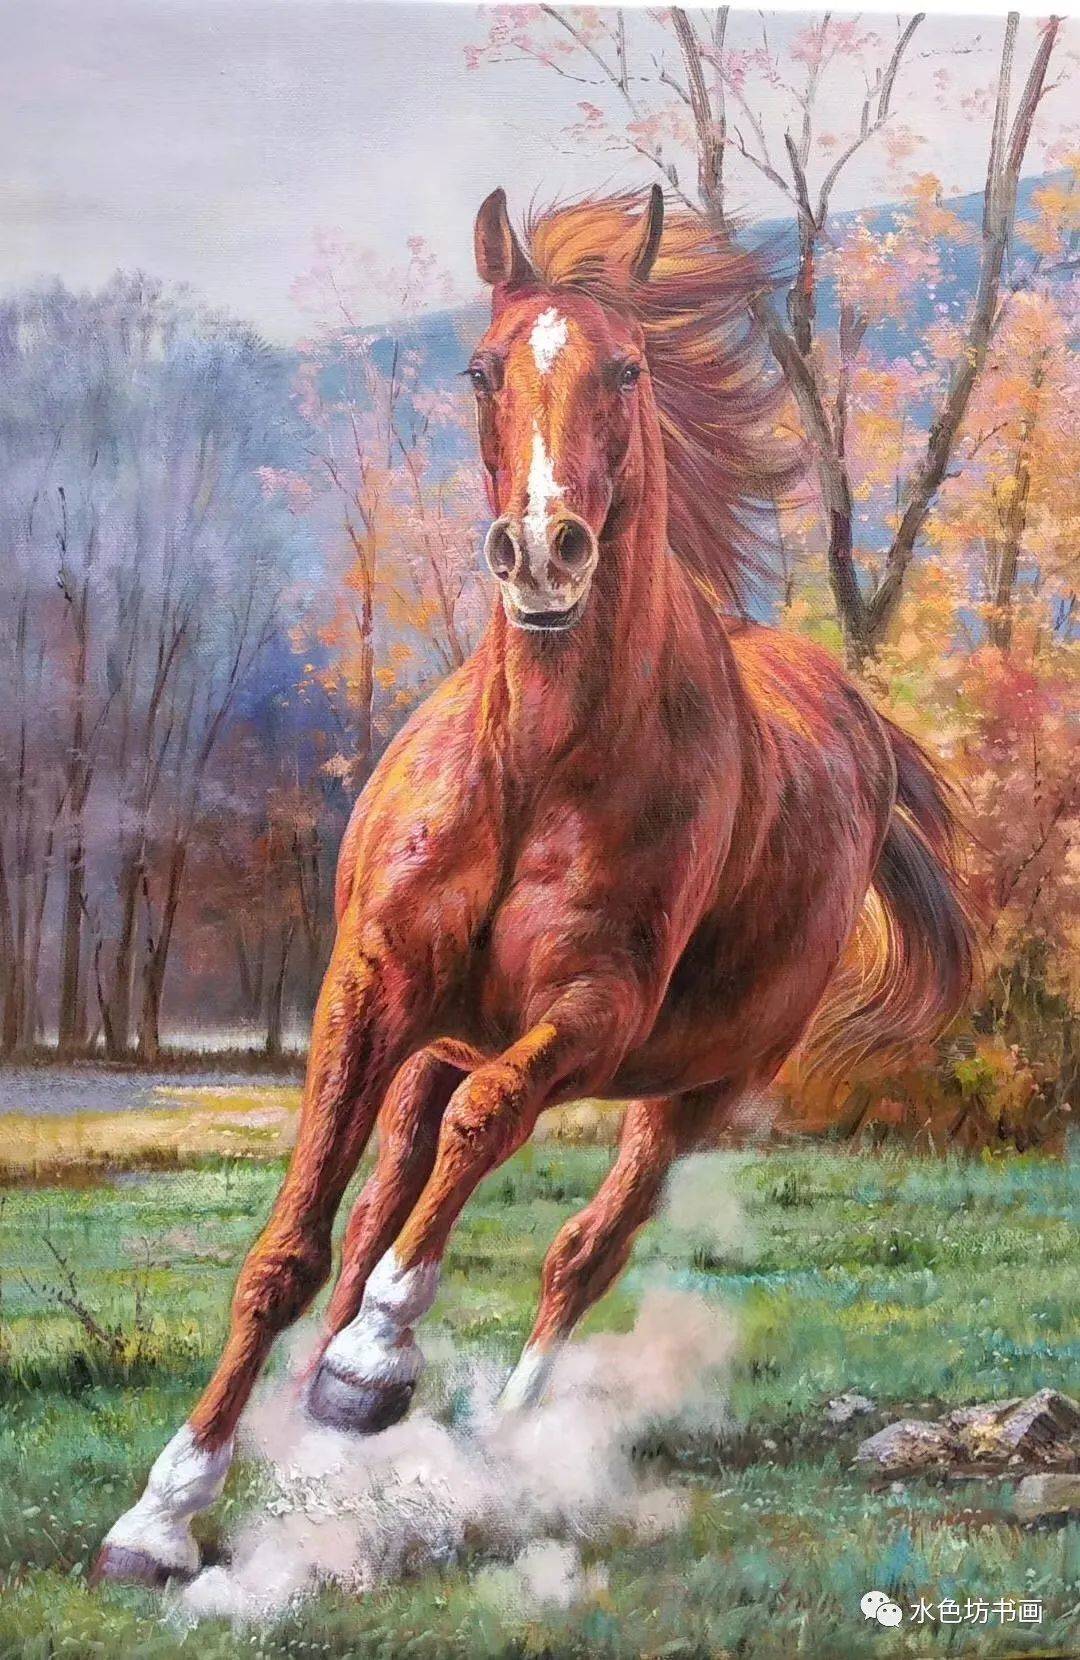 把马绘画好是画家们精深的画艺和蔼于察看的生活态度,施重庆展现的